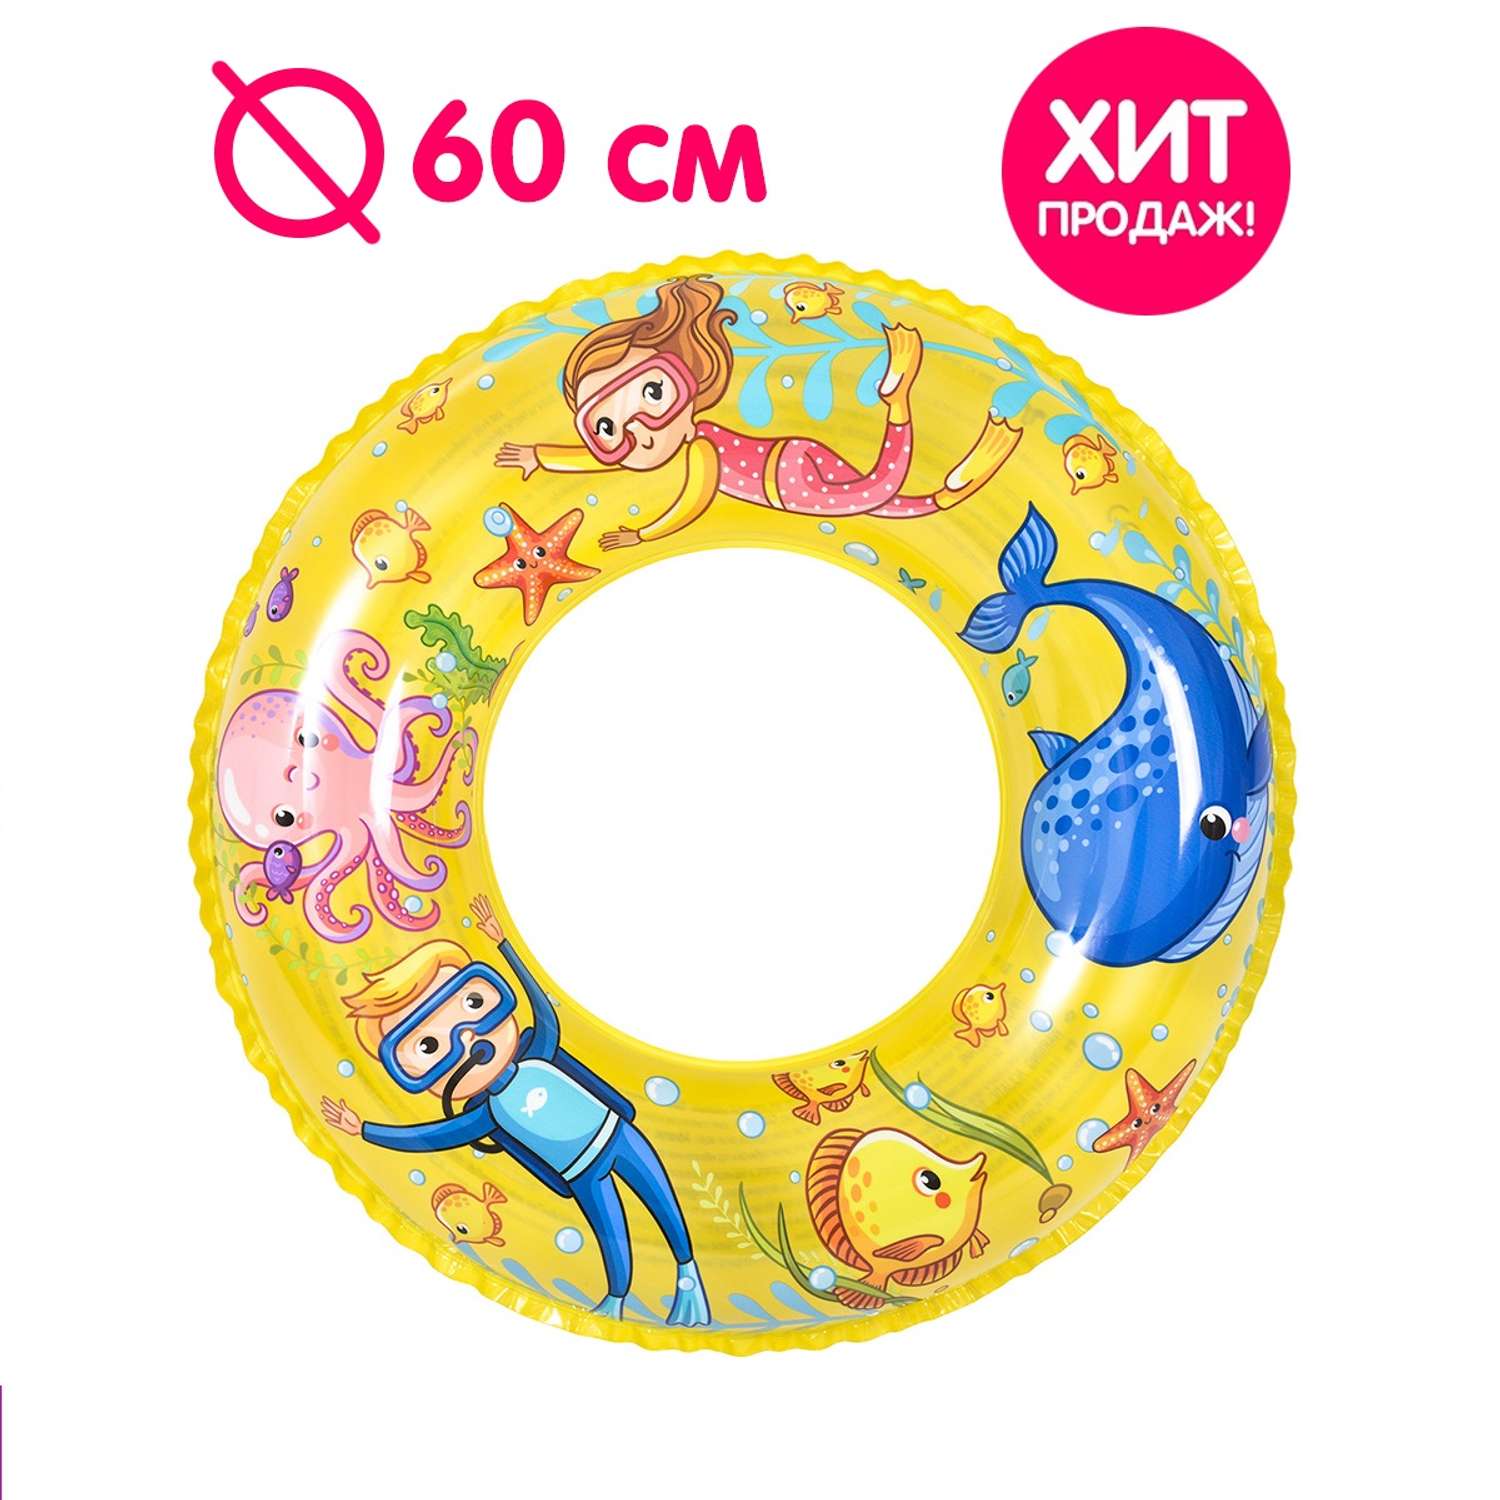 Надувной круг для плавания Jilong Аквалангист 60 см - фото 2